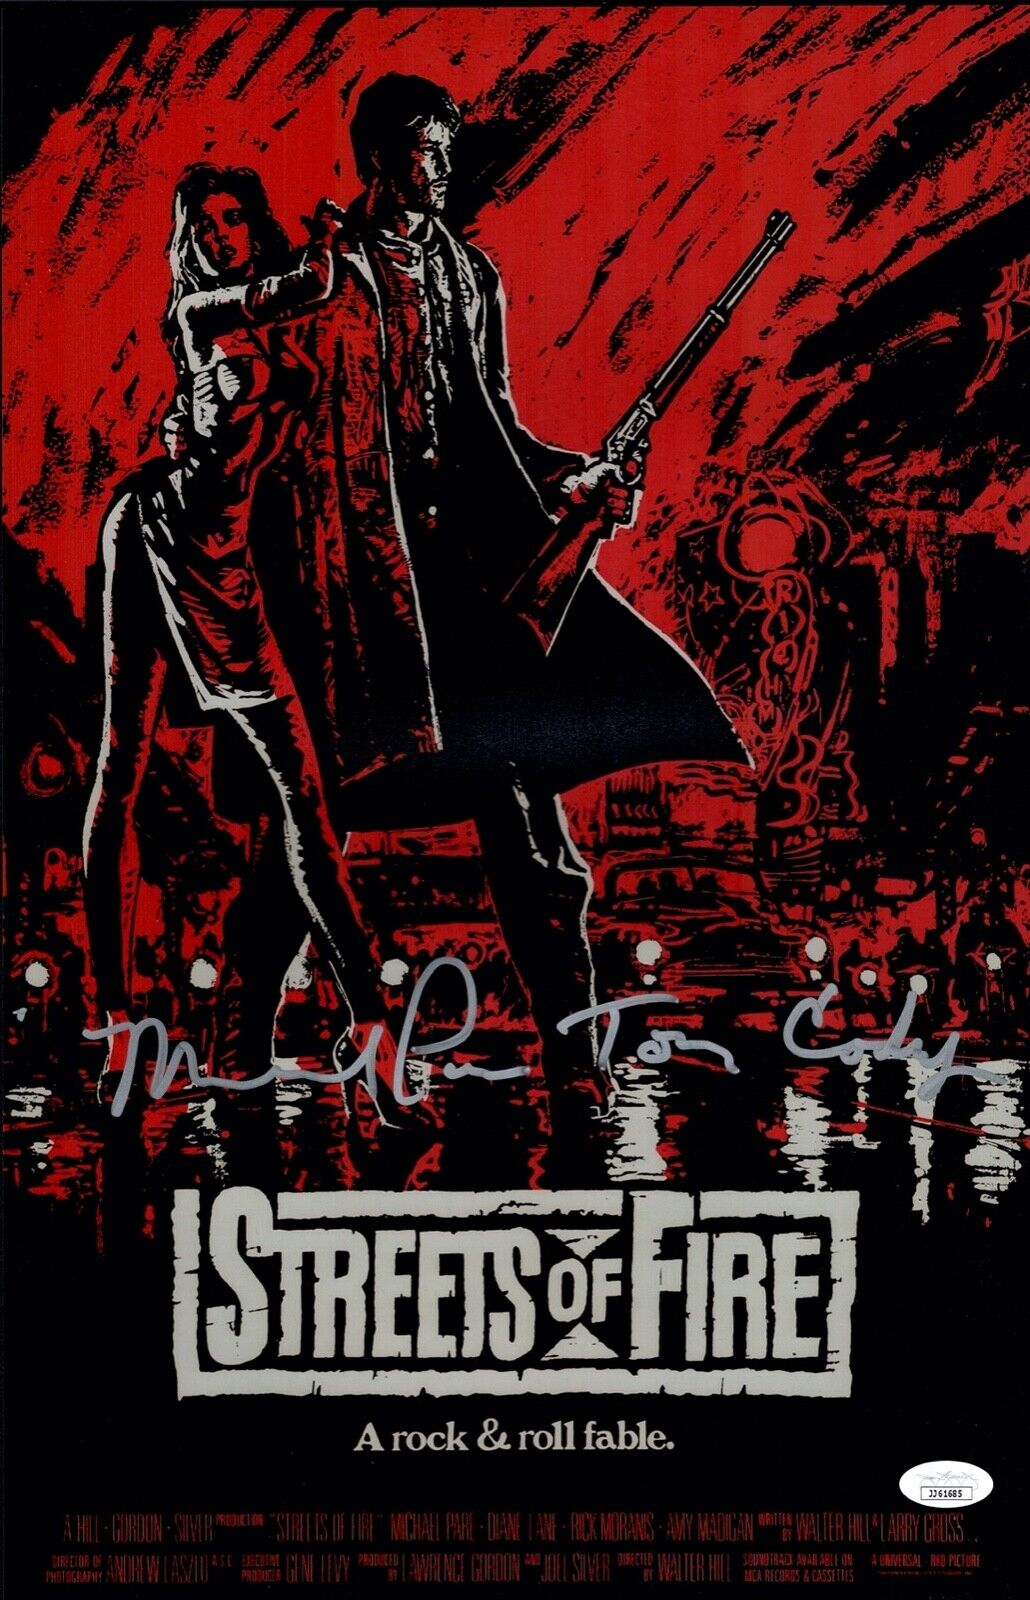 MICHAEL PARé Signed 11x17 Photo Poster painting STREETS OF FIRE PARE Autograph JSA COA Cert